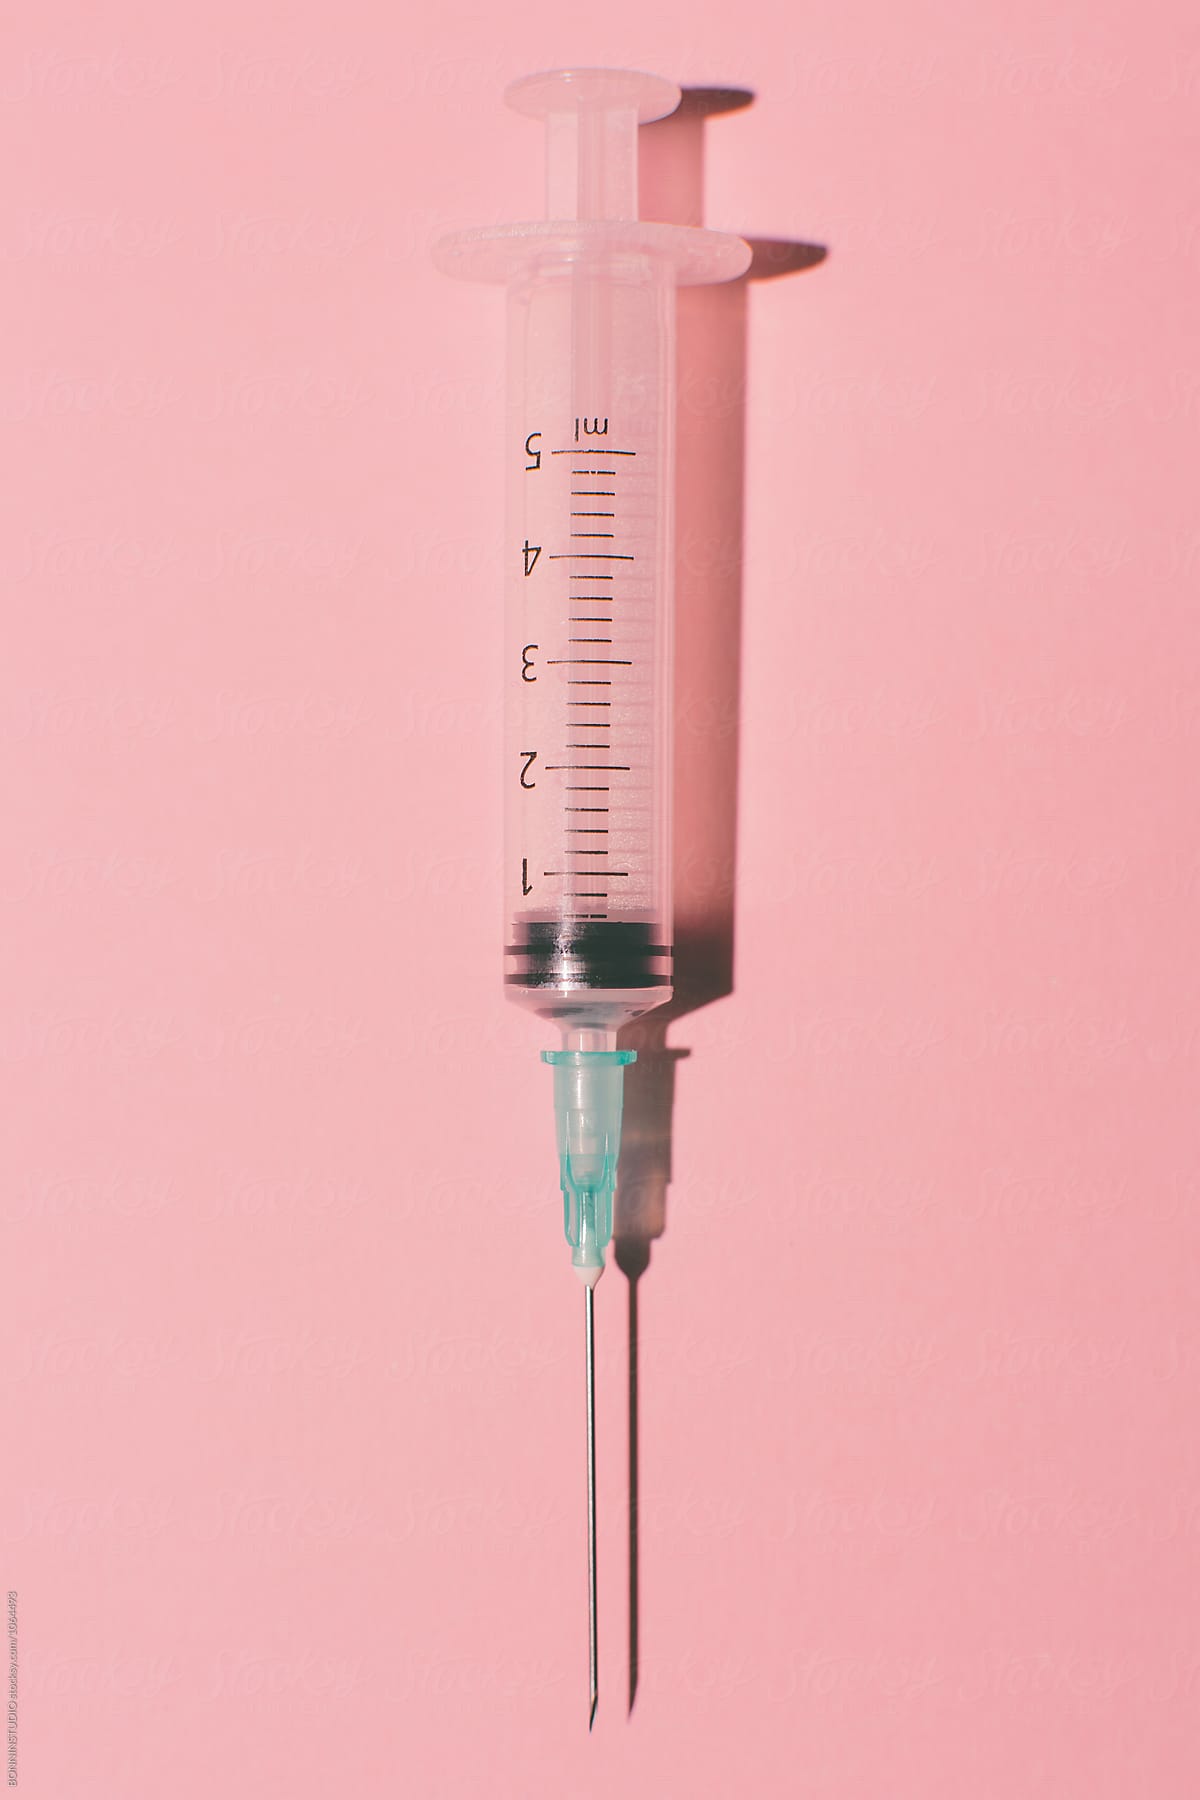 Syringe on pink background from above. by BONNINSTUDIO, Syringe